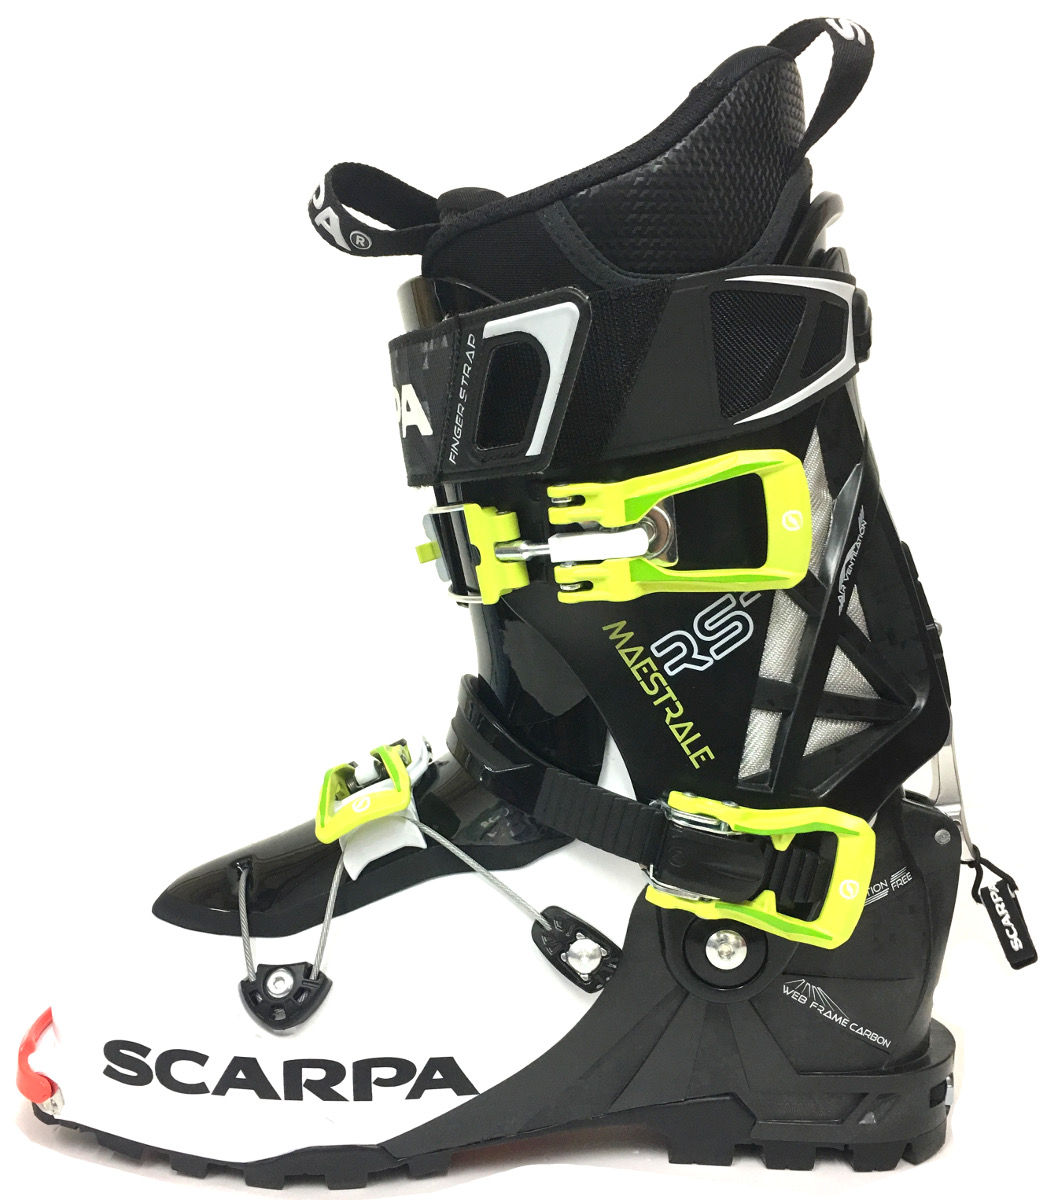 Nouvelle chaussure de ski de randonnée Scarpa 2018 : la Maestrale RS 2